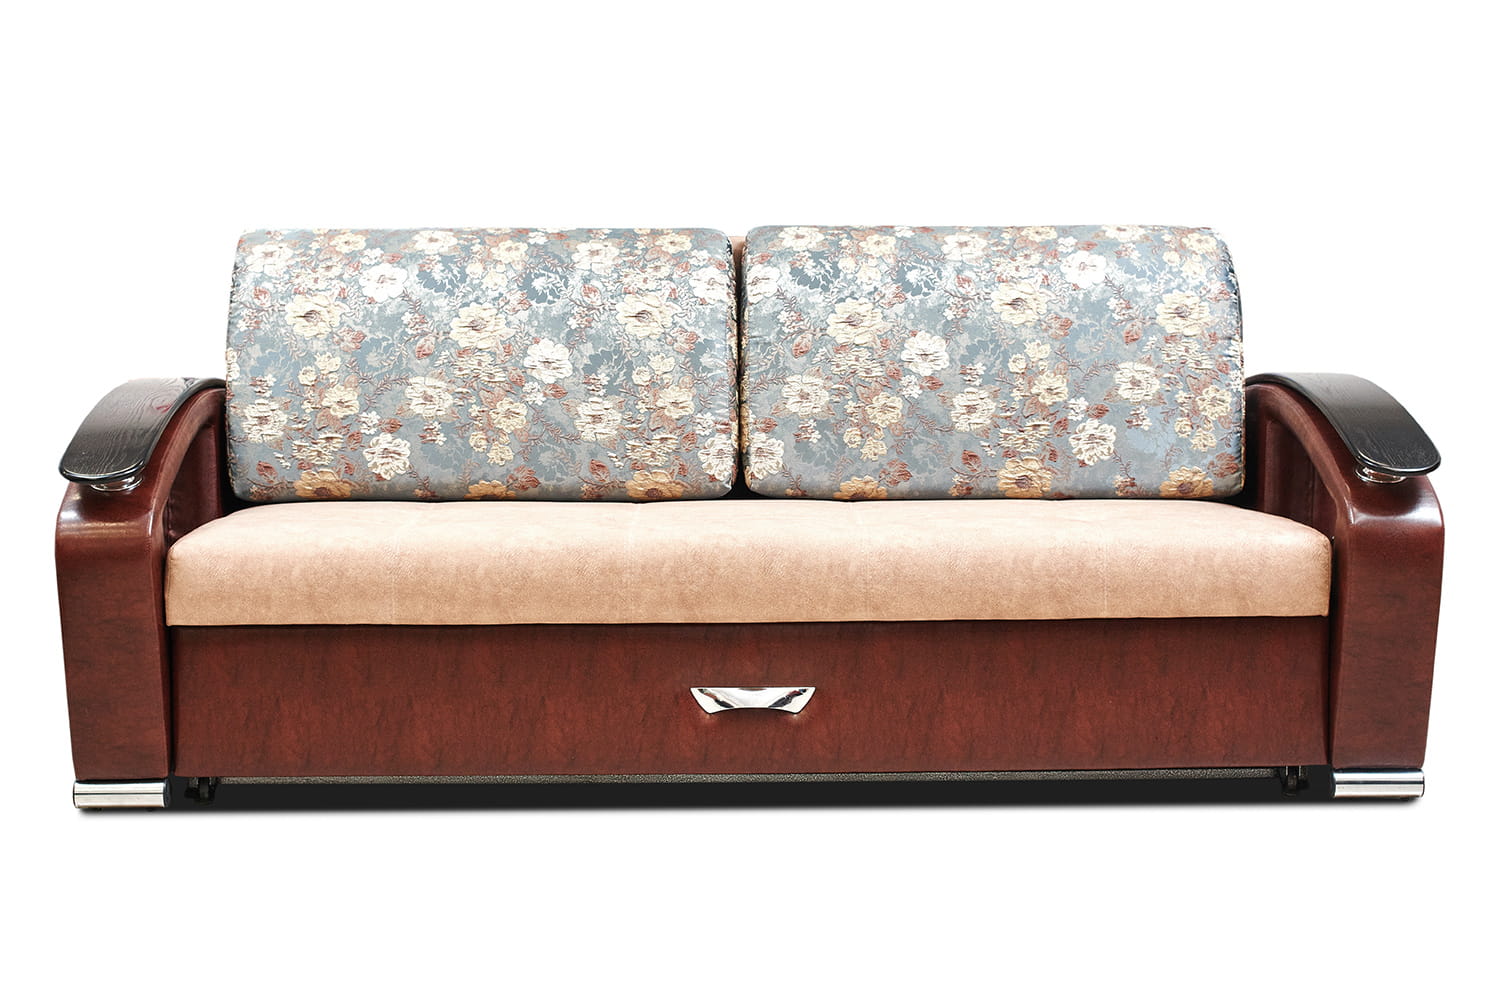 Купить диван от производителя мебель. Диван еврокнижка Валенсия Асгард. Диван еврокнижка металлокаркас. Красивые недорогие диваны.